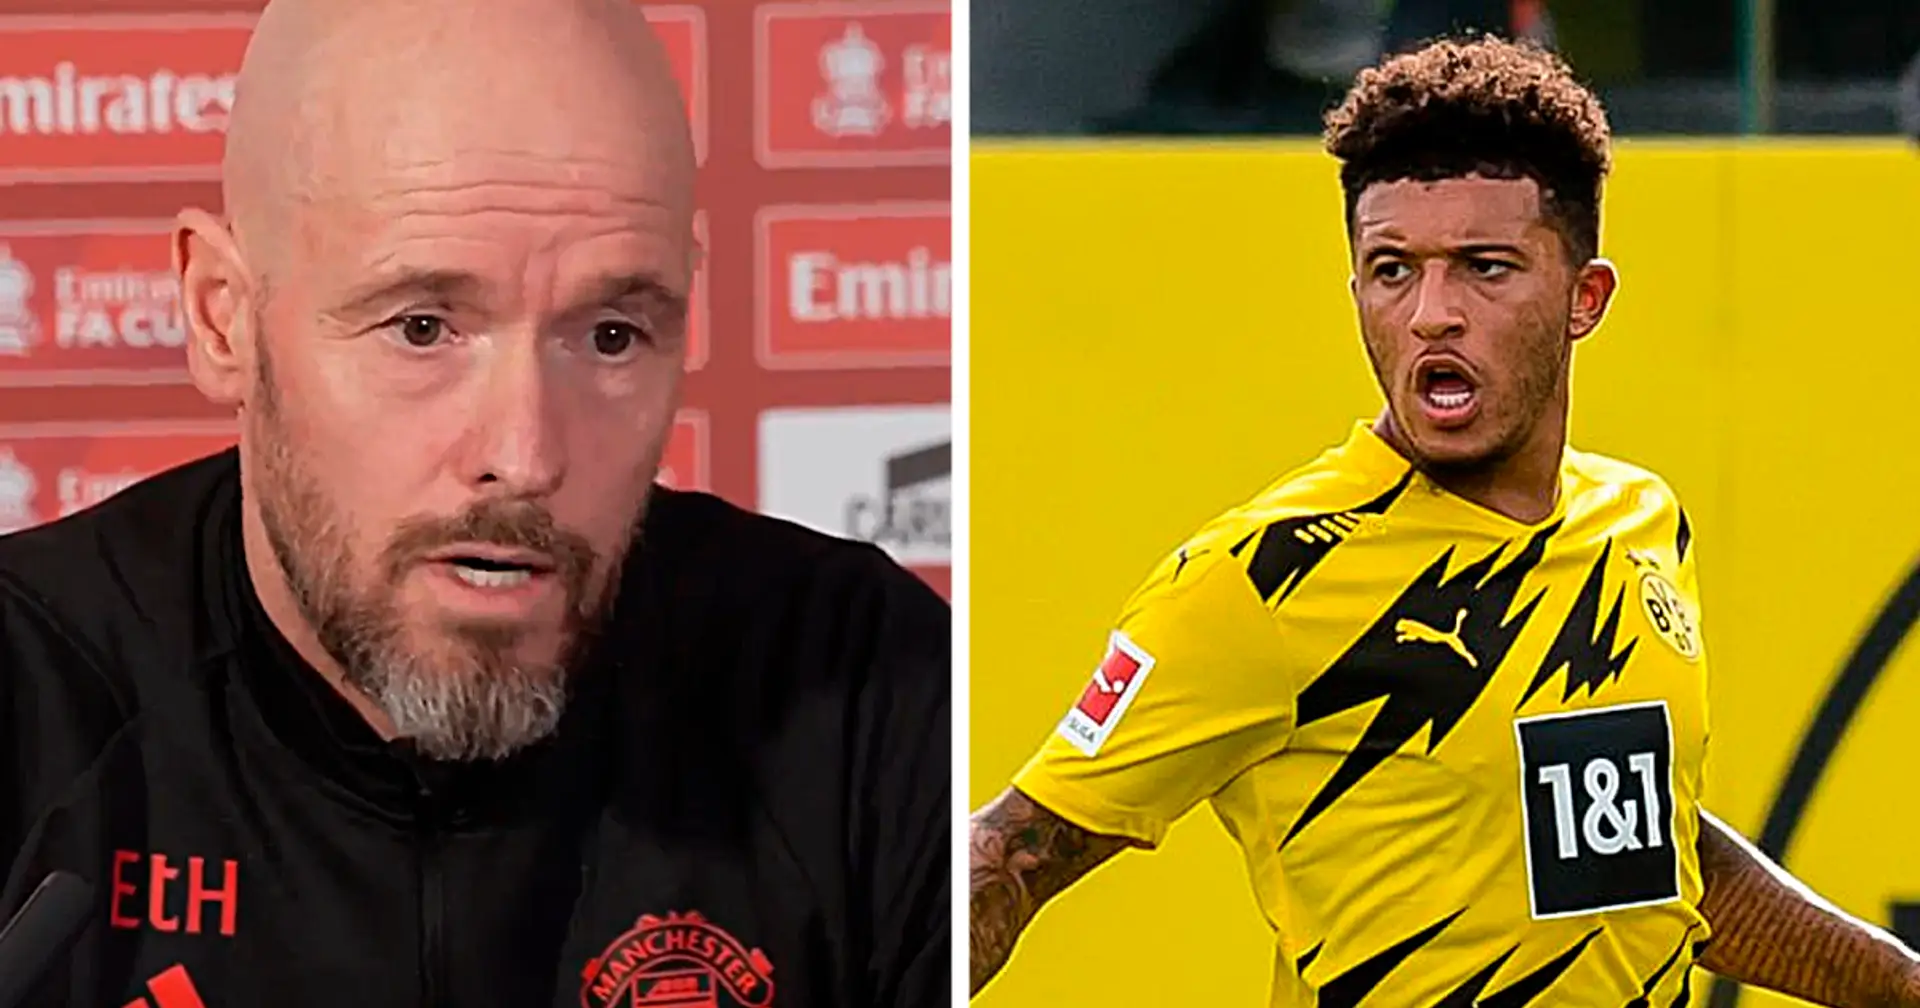 Ten Hag äußert sich zum Sancho-Wechsel zu Dortmund: "Wir müssen abwarten, was passiert"